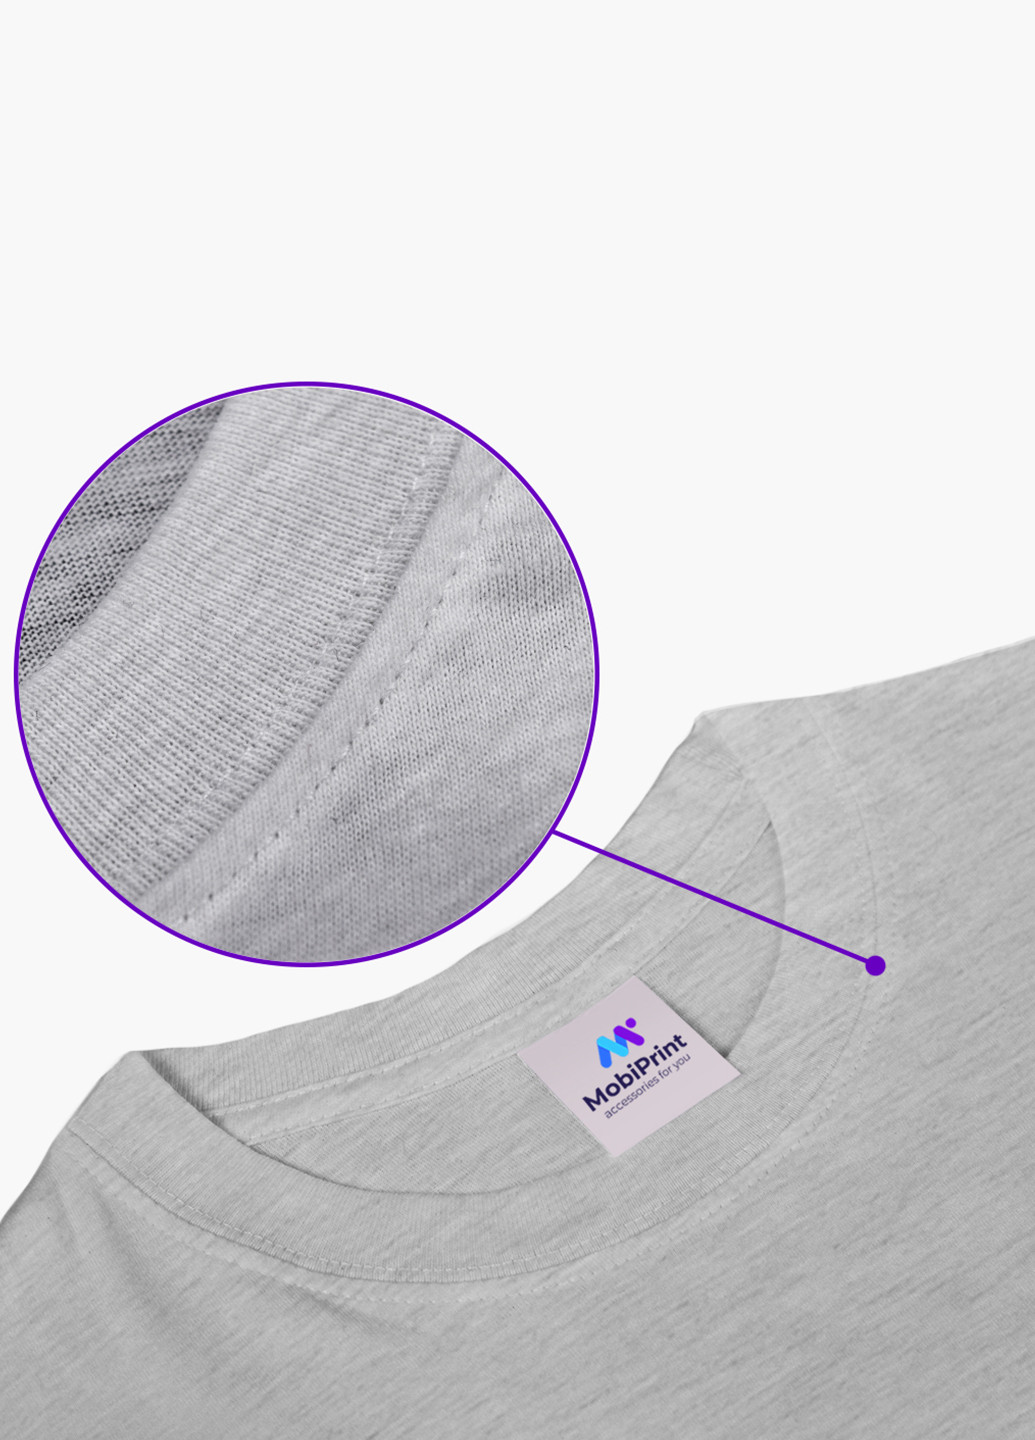 Світло-сіра демісезонна футболка дитяча робокар полі (robocar poli) (9224-1619) MobiPrint